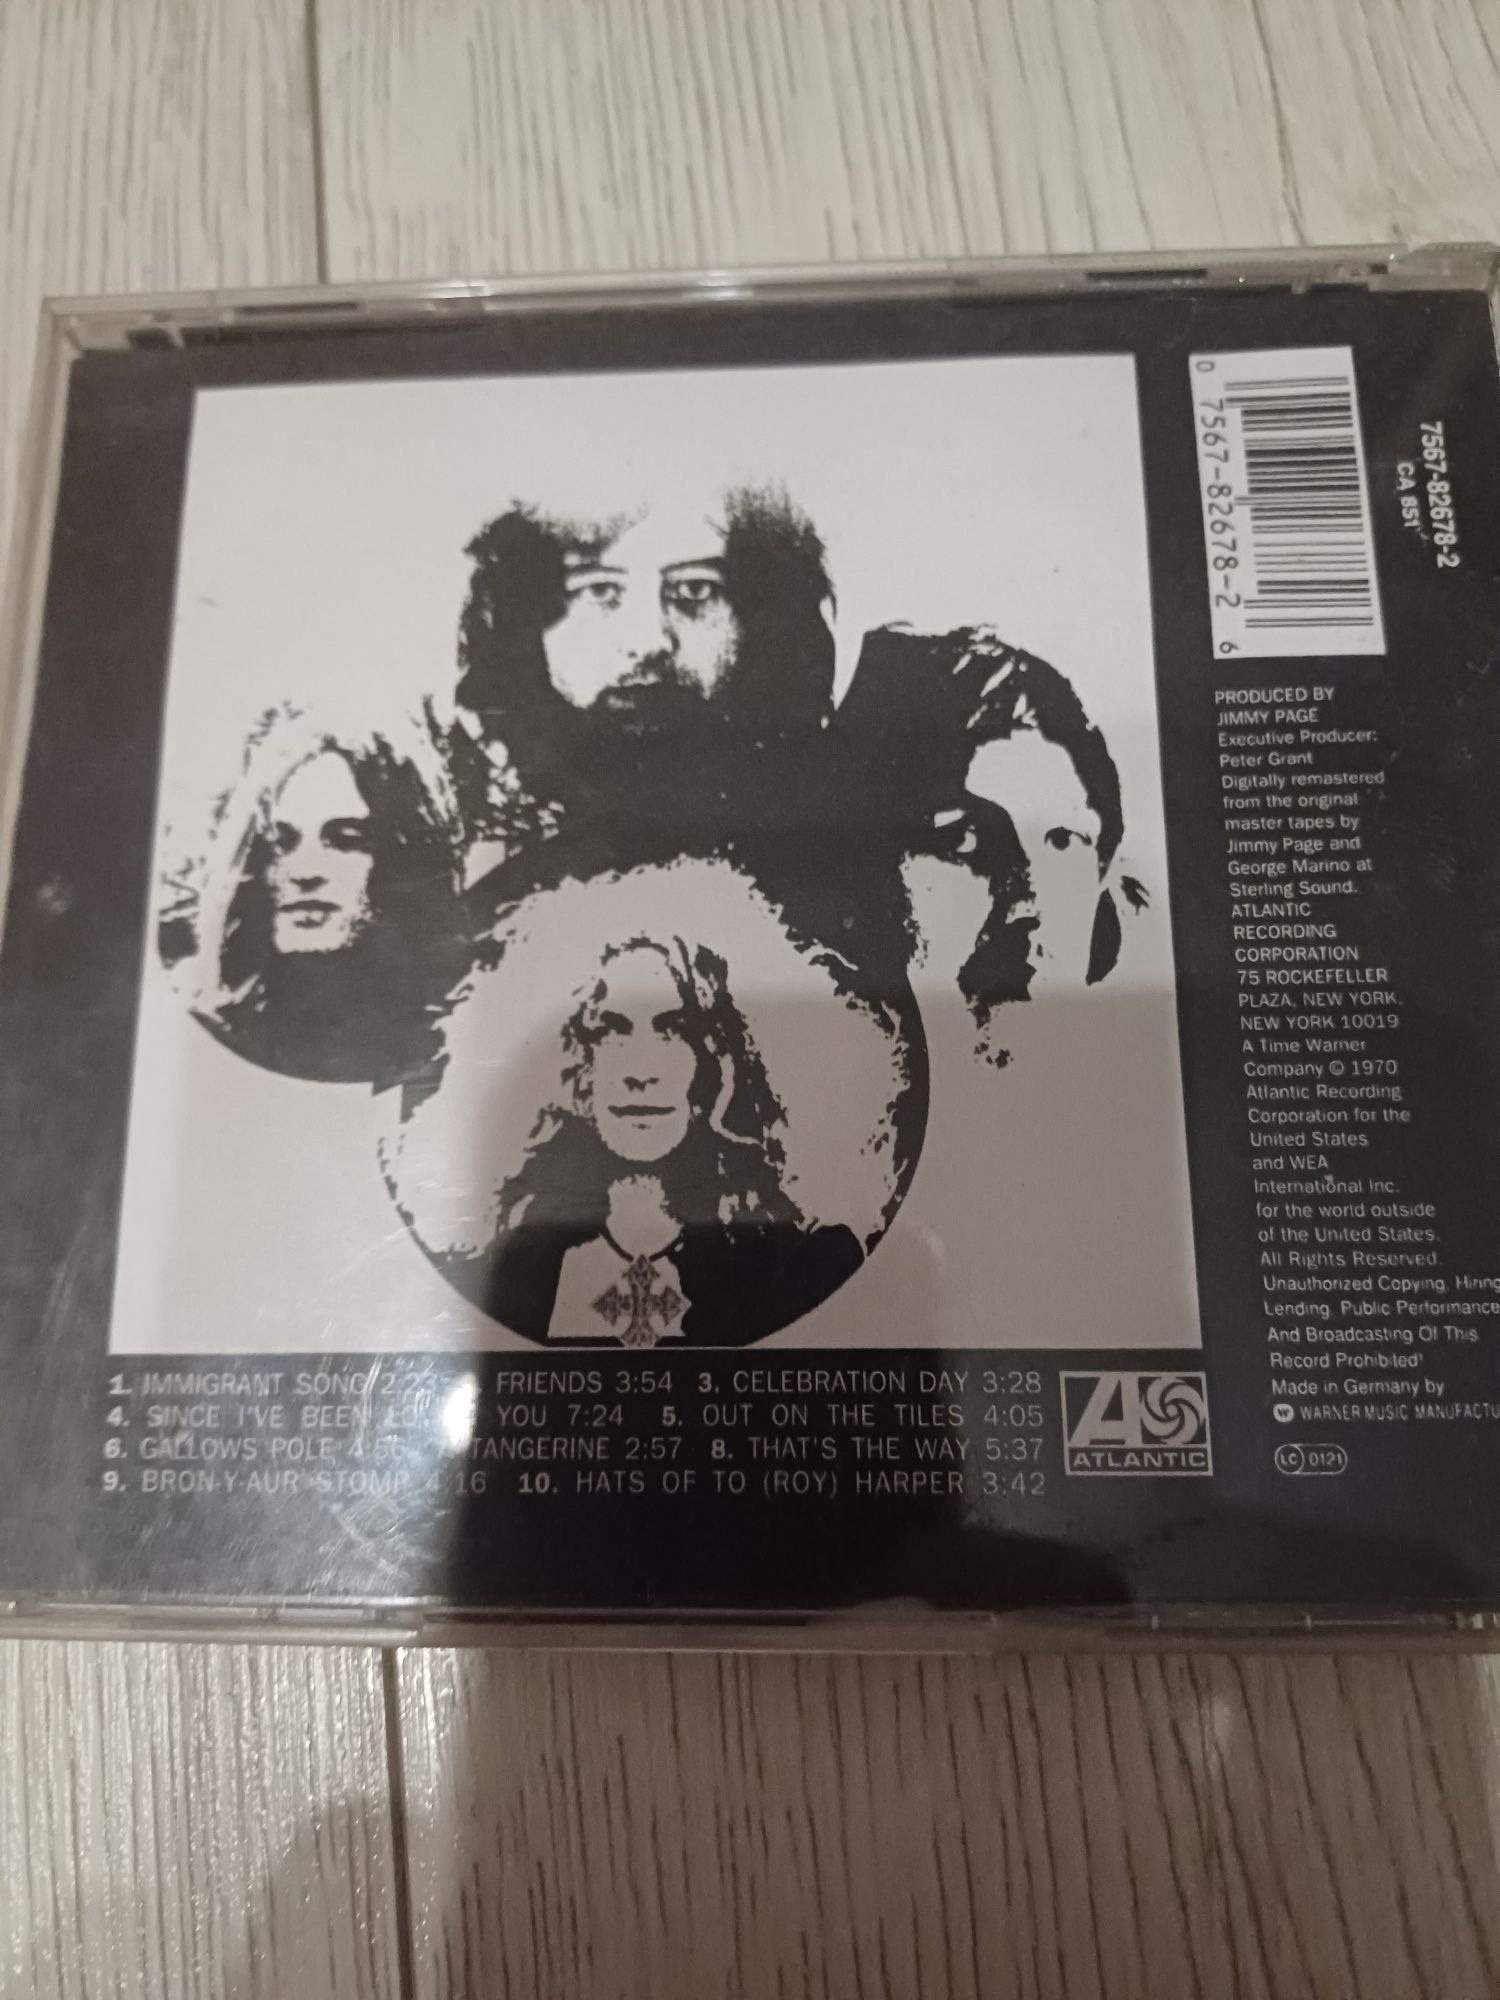 Led Zeppelin III PŁYTA CD